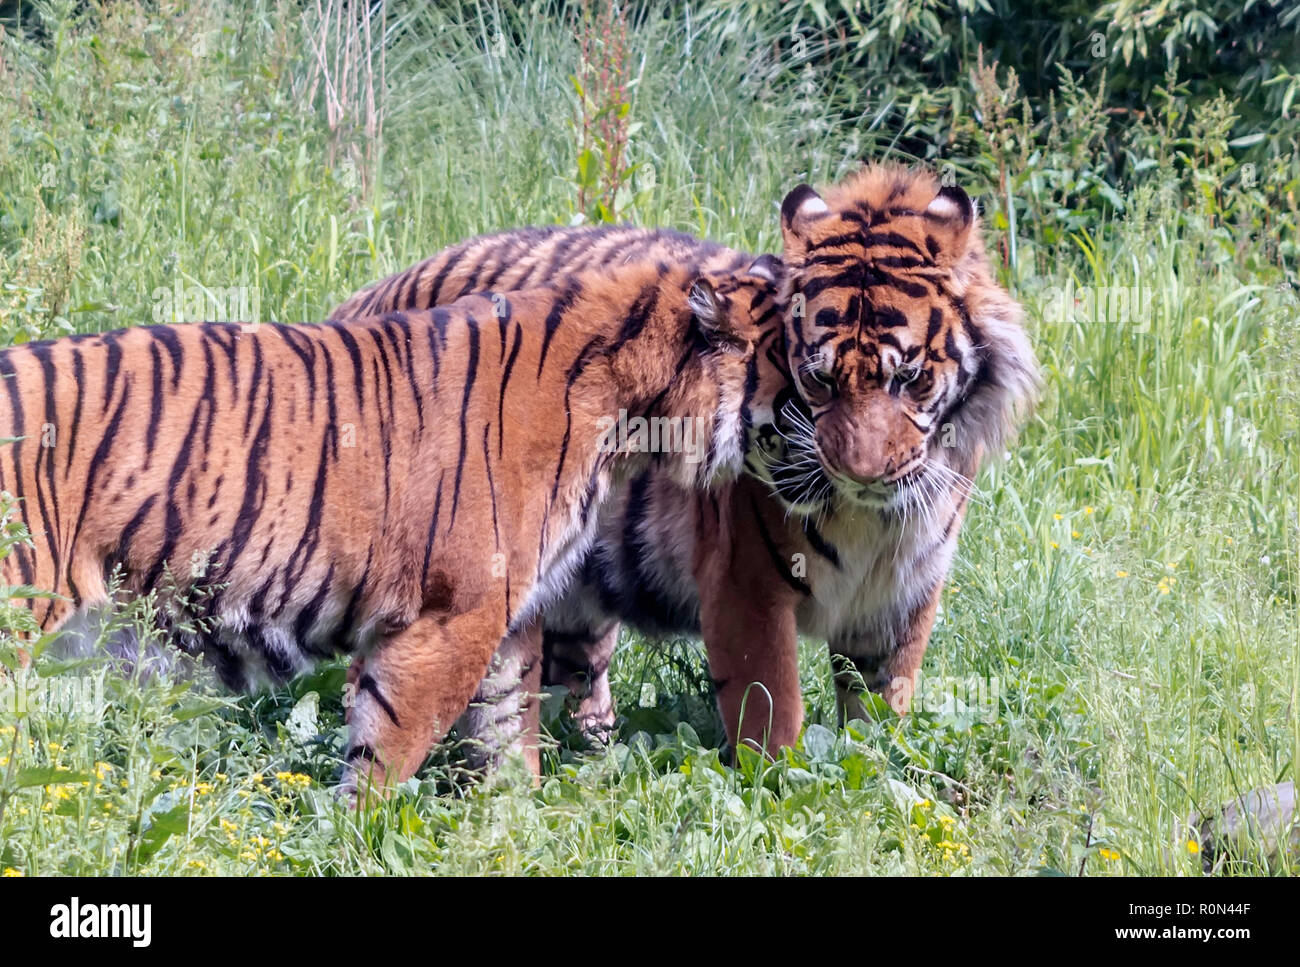 Sumatran tigress (Panthera tigris sondaica) snuggling up to male tiger. Stock Photo